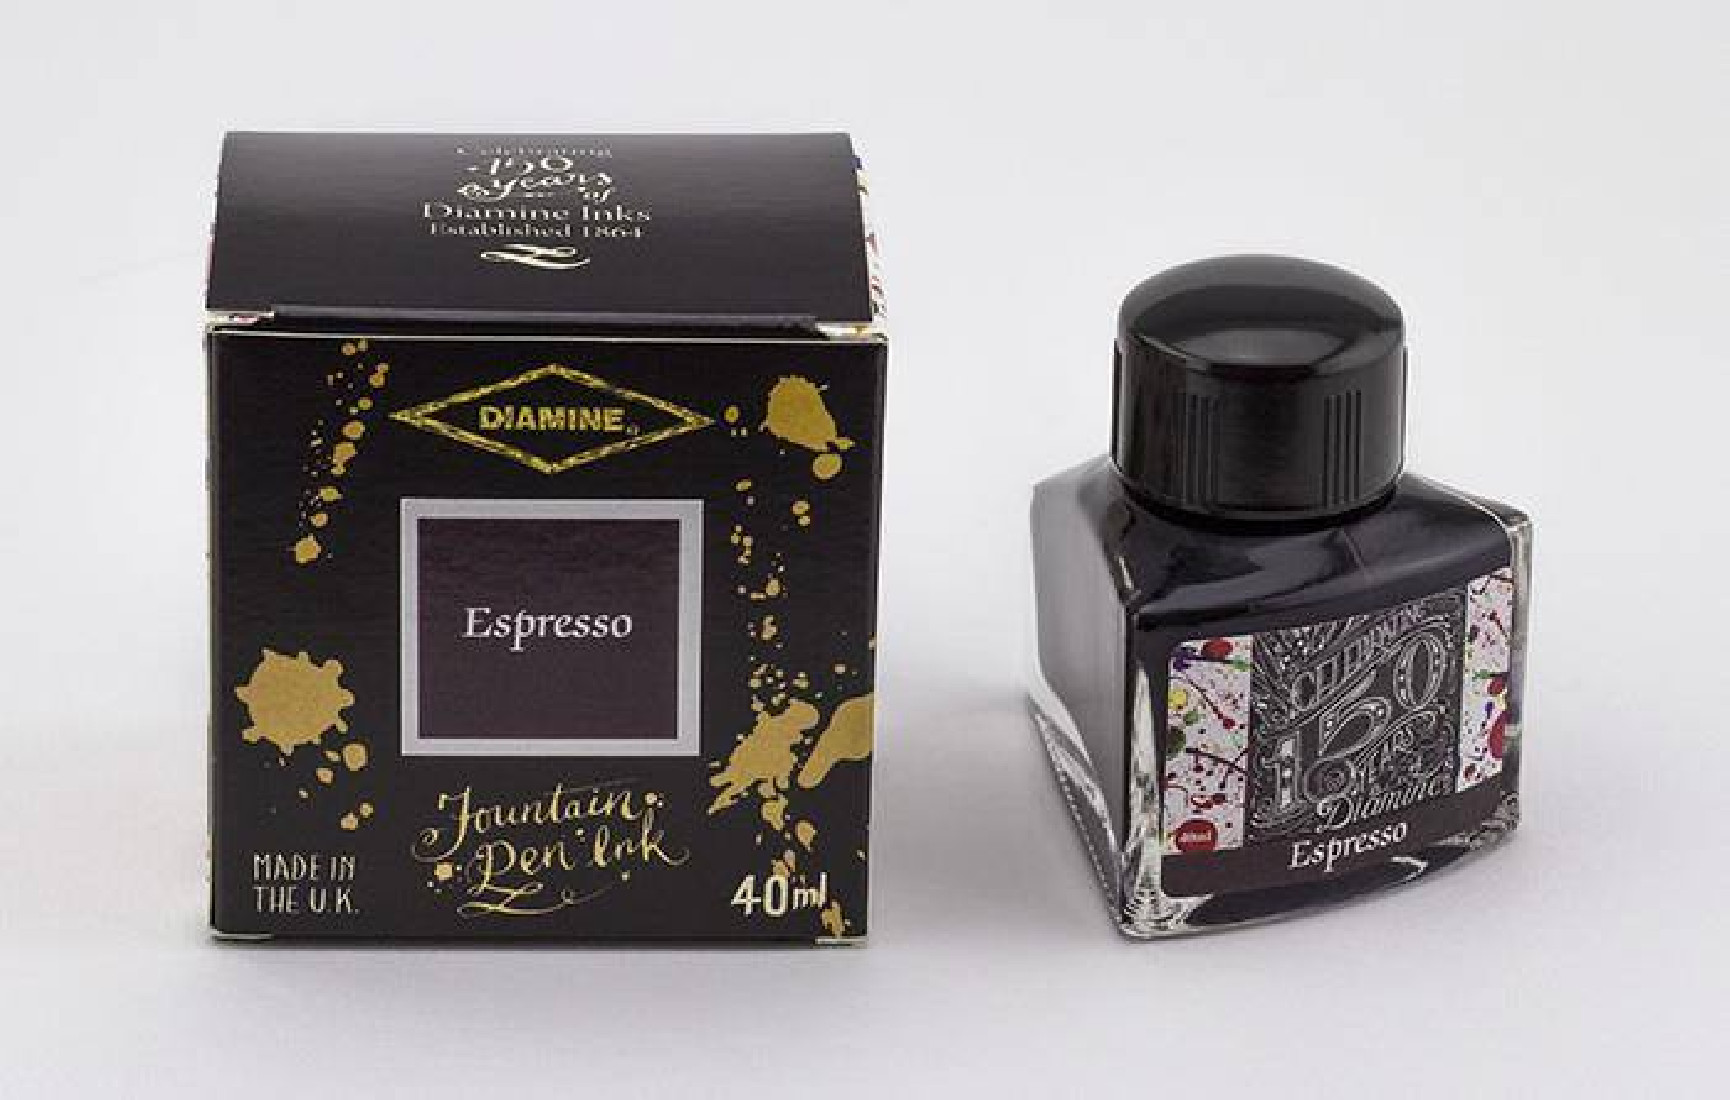 Diamine 40ml Espresso 1114 150 years anniversary Fountain pen ink